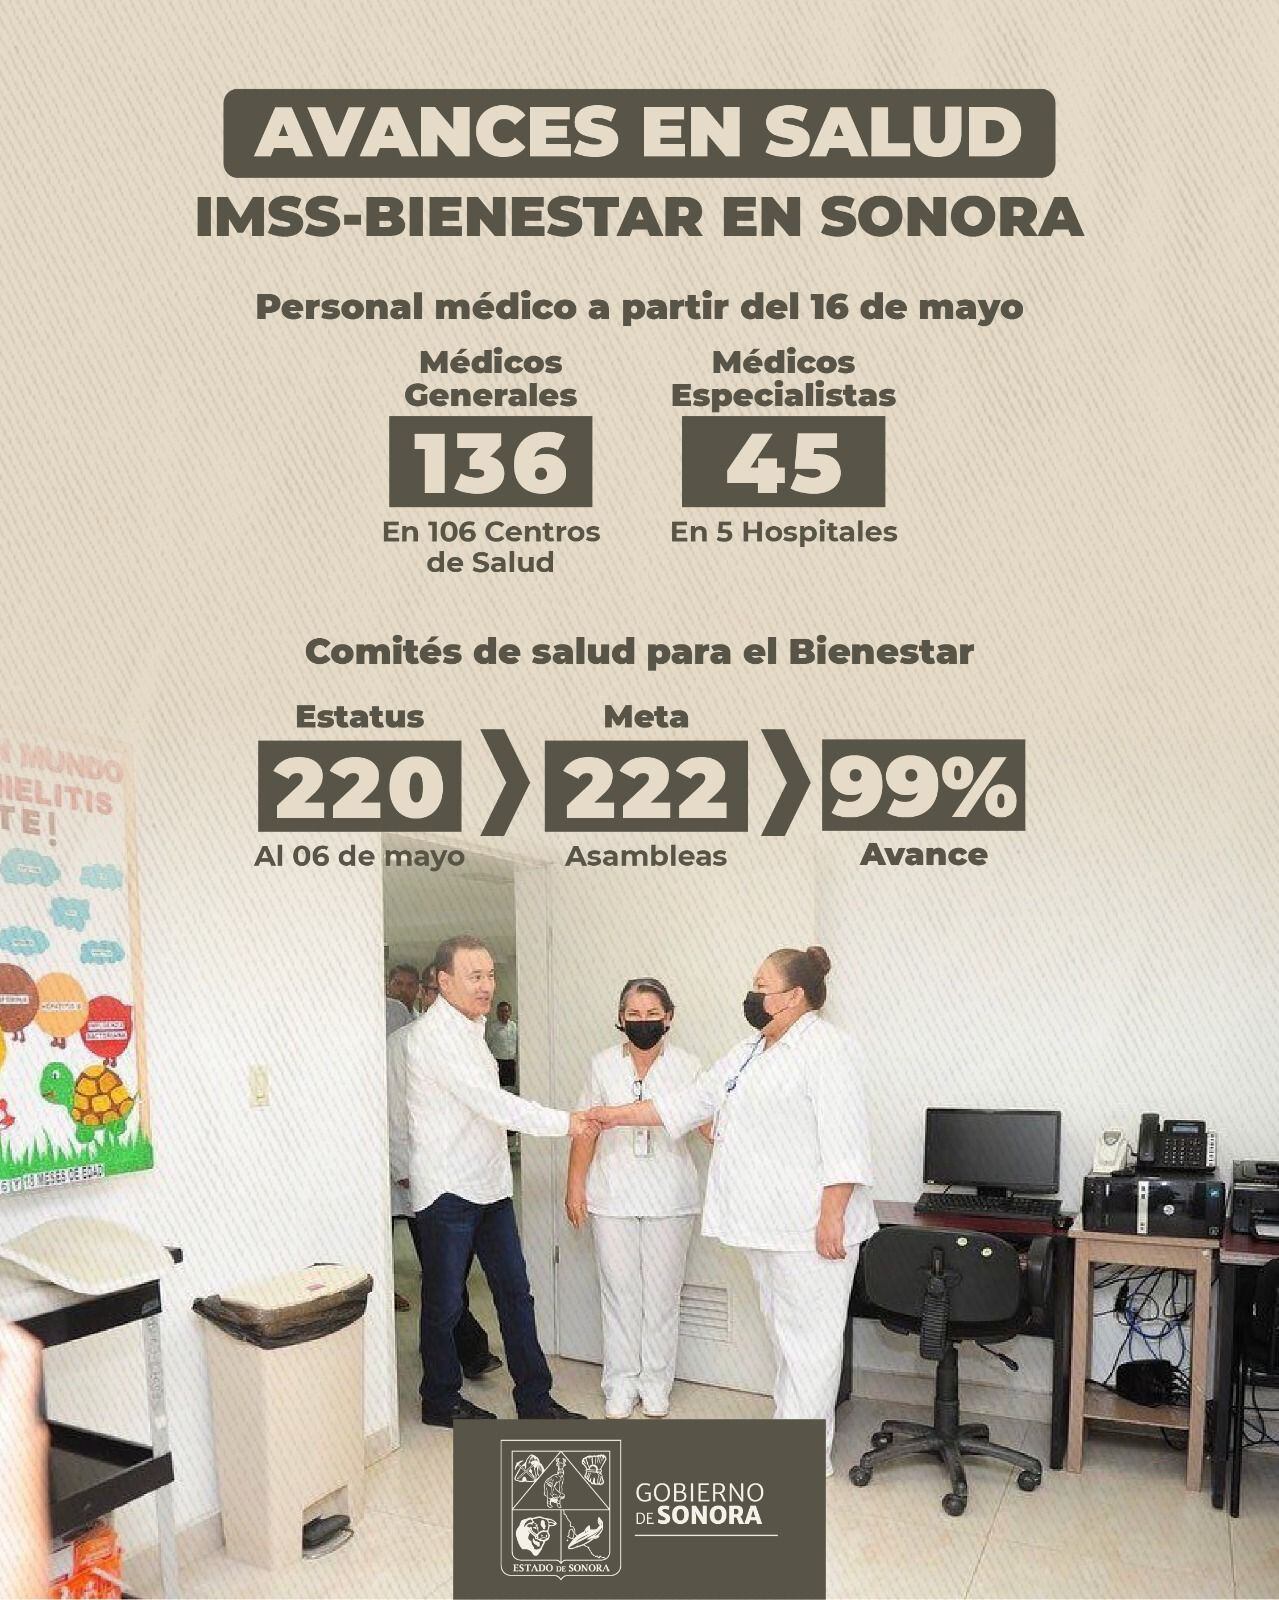 iMSS-Bienestar Sonora